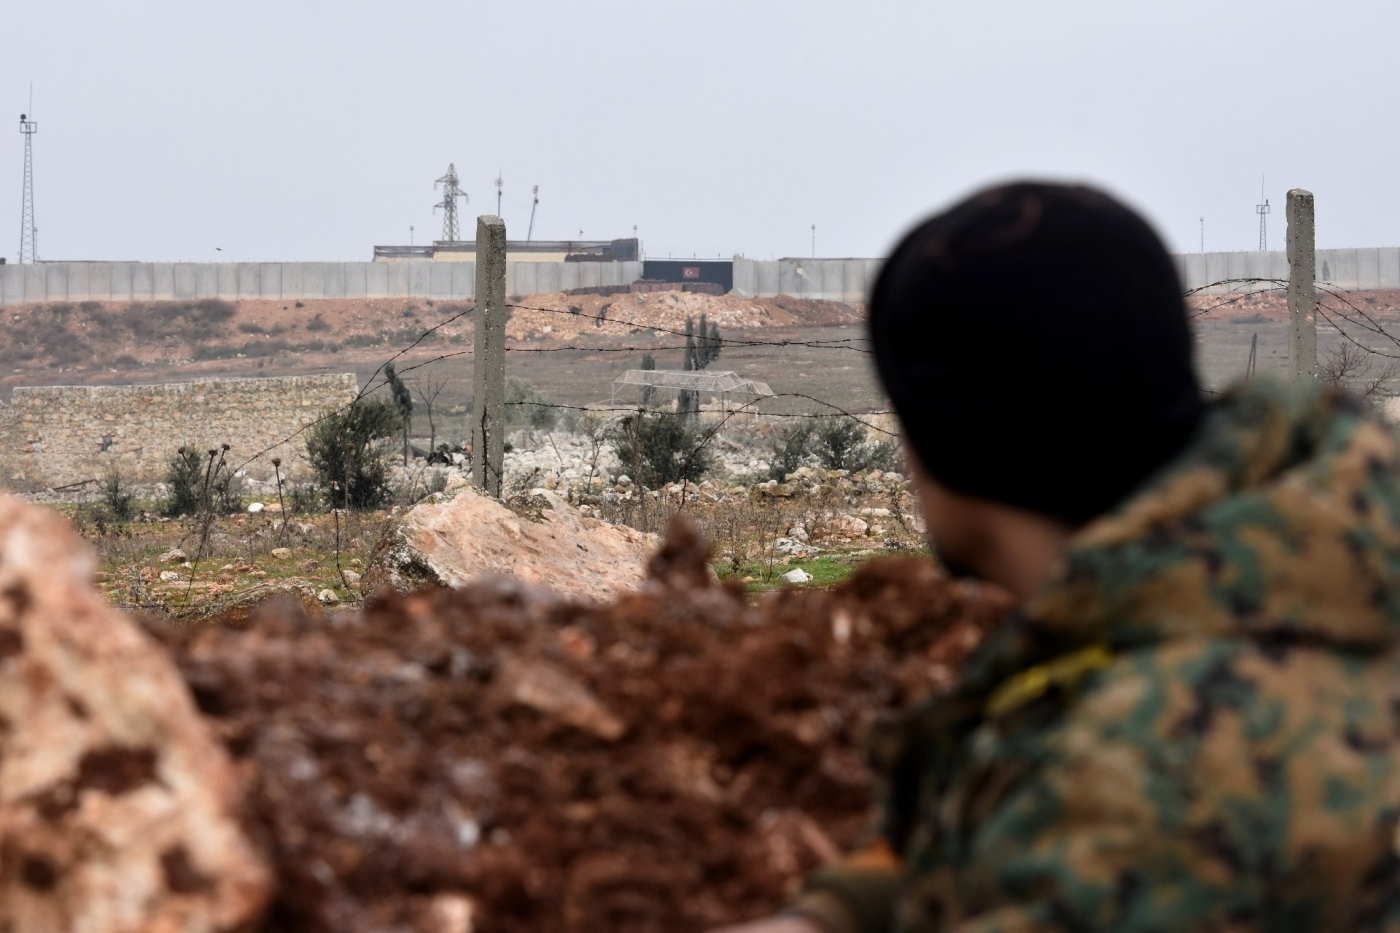 Un soldat de l’armée syrienne regarde un poste d’observation militaire turc dans le district d’al-Rashidin, dans la campagne au sud-ouest d’Alep en janvier (AFP)